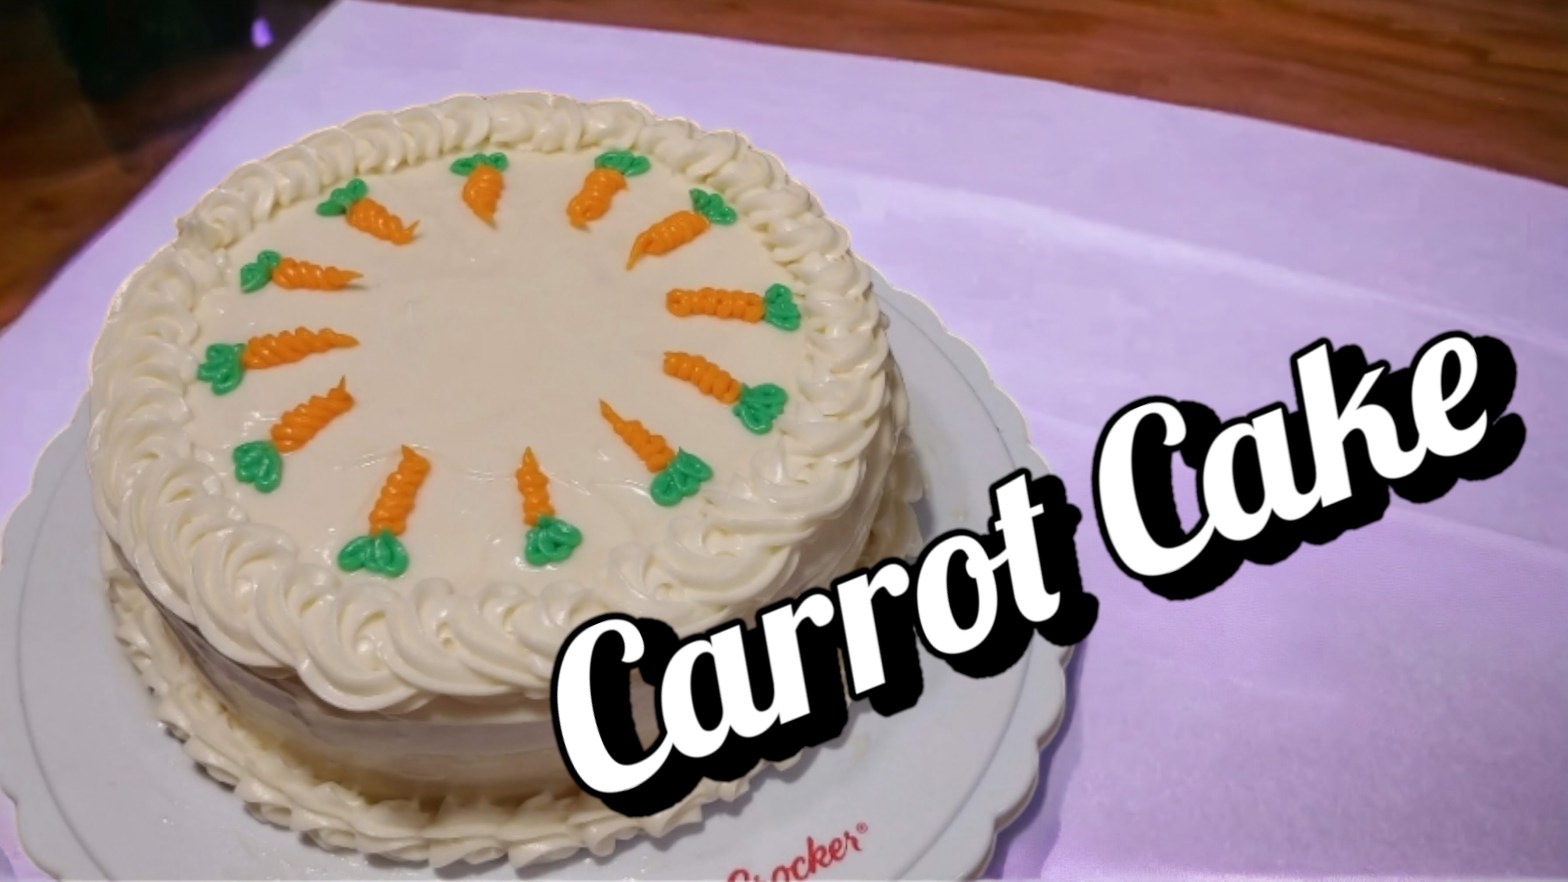 How to Make Carrot Cake